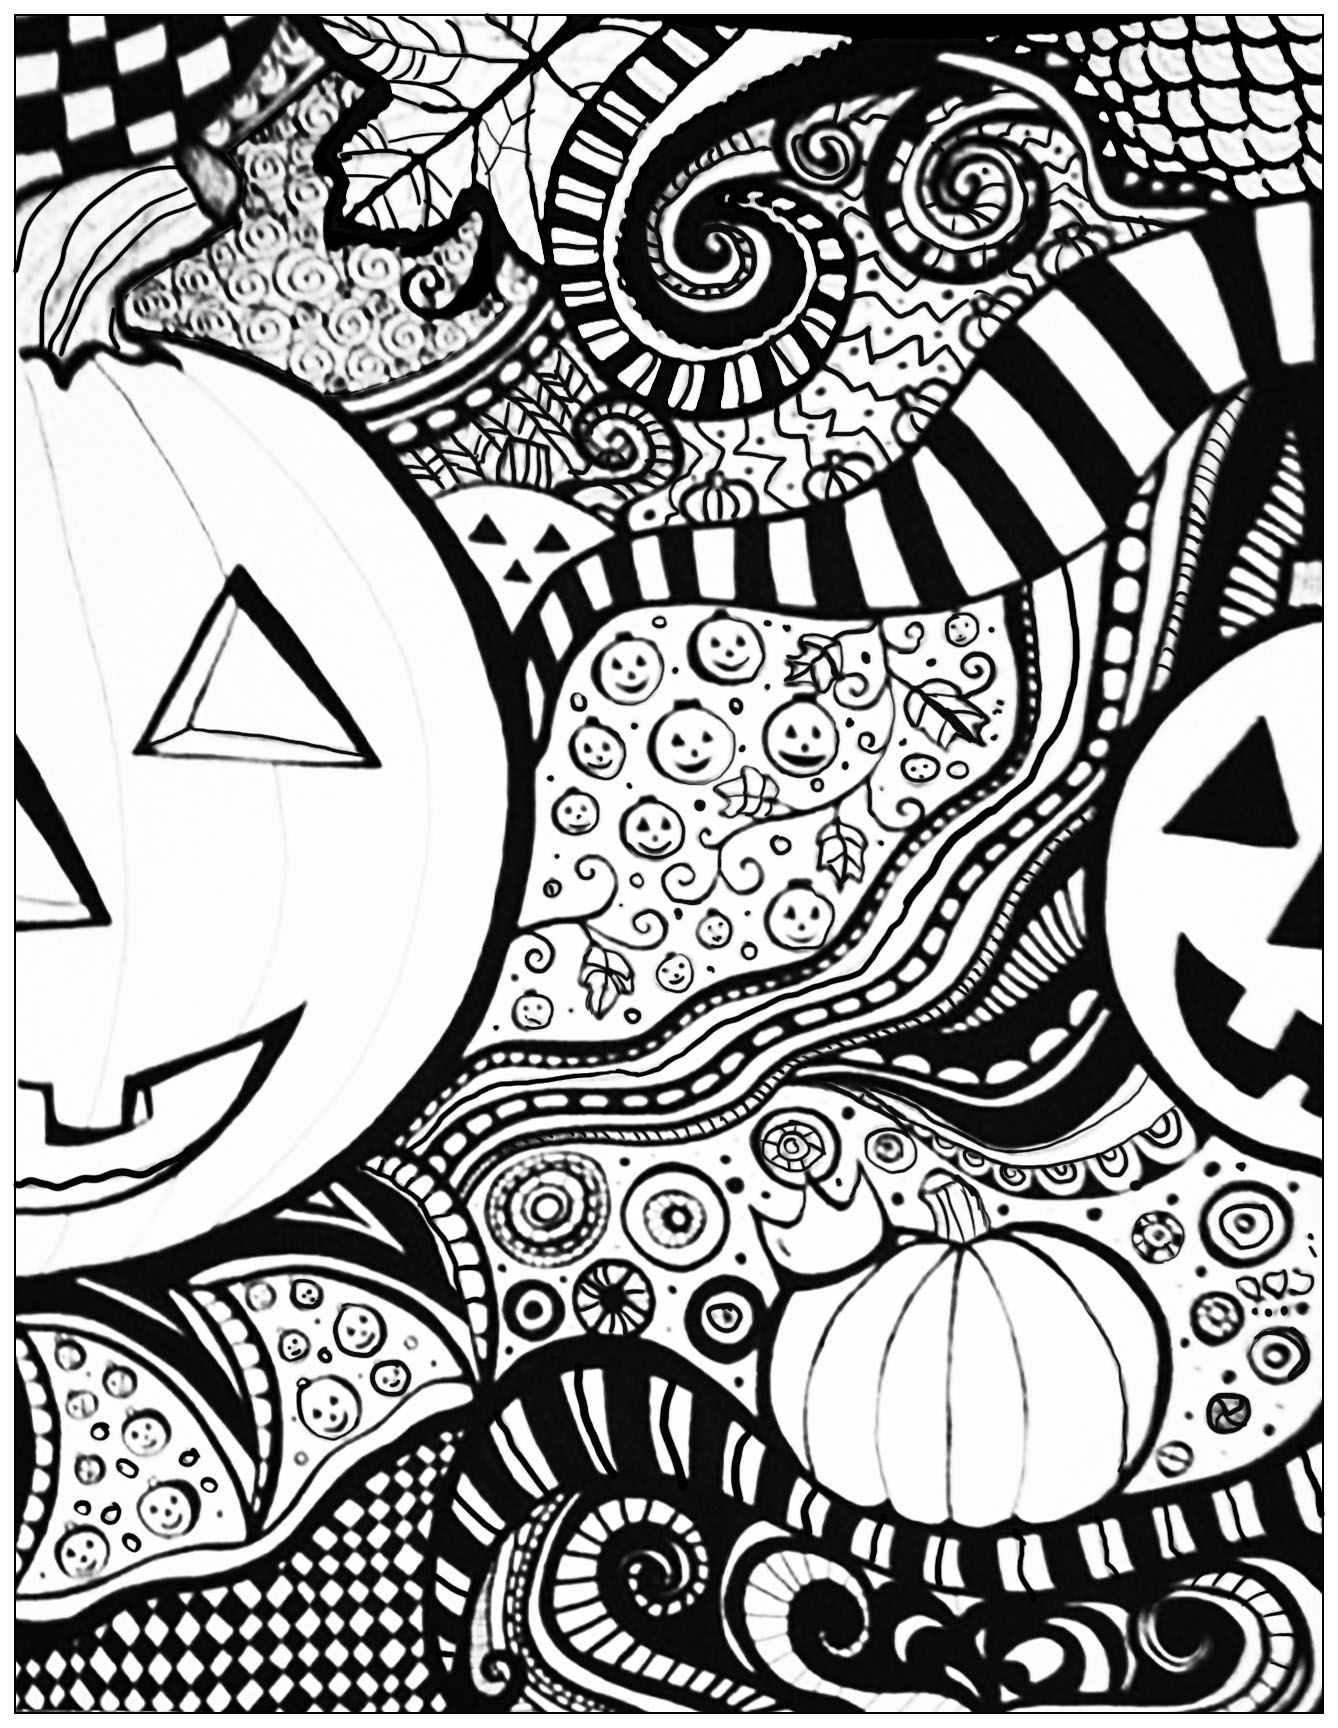 Desenhos de Halloween para colorir para imprimir para crianças